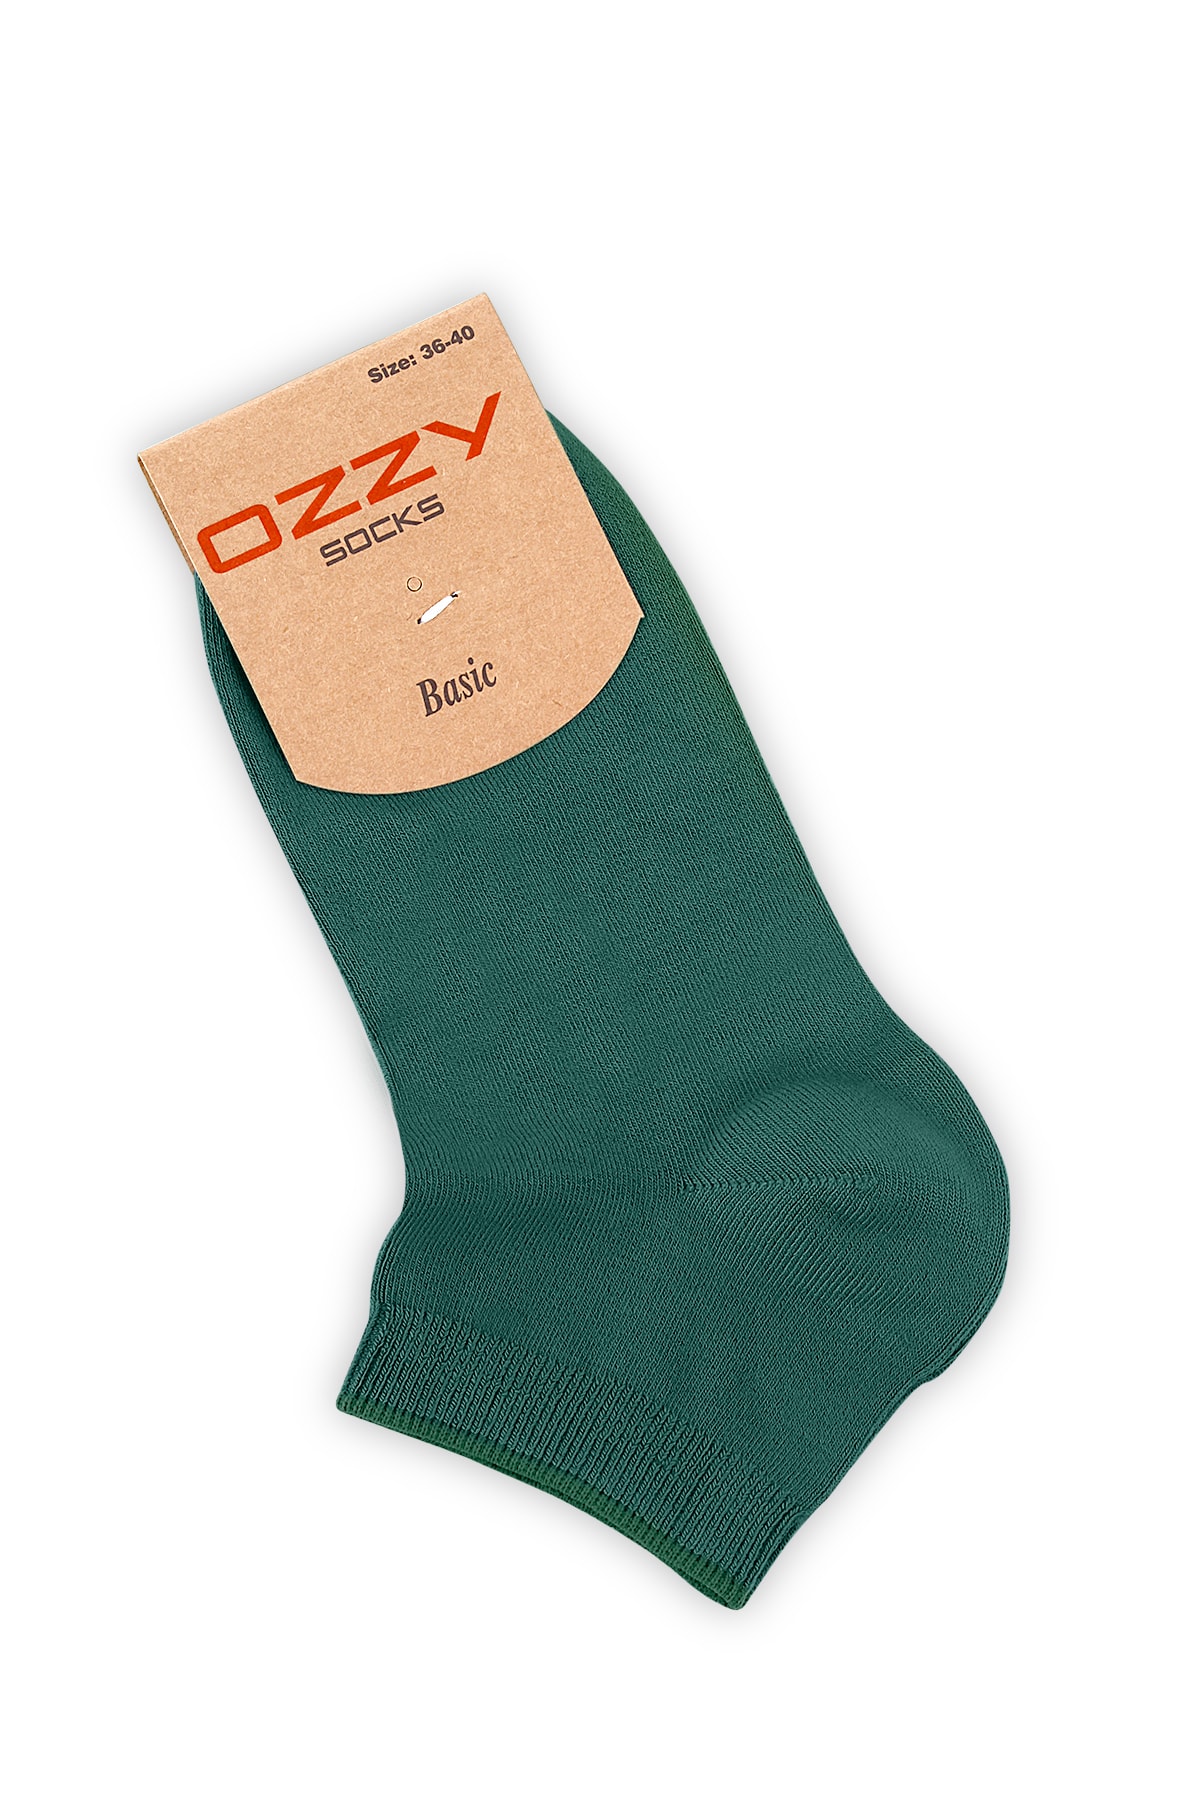 Ozzy Socks 8 Çift Bambu Kadın Dikişsiz Patik Çorap 4 Mevsim Dayanıklı Topuk Ve Burun ZN11512